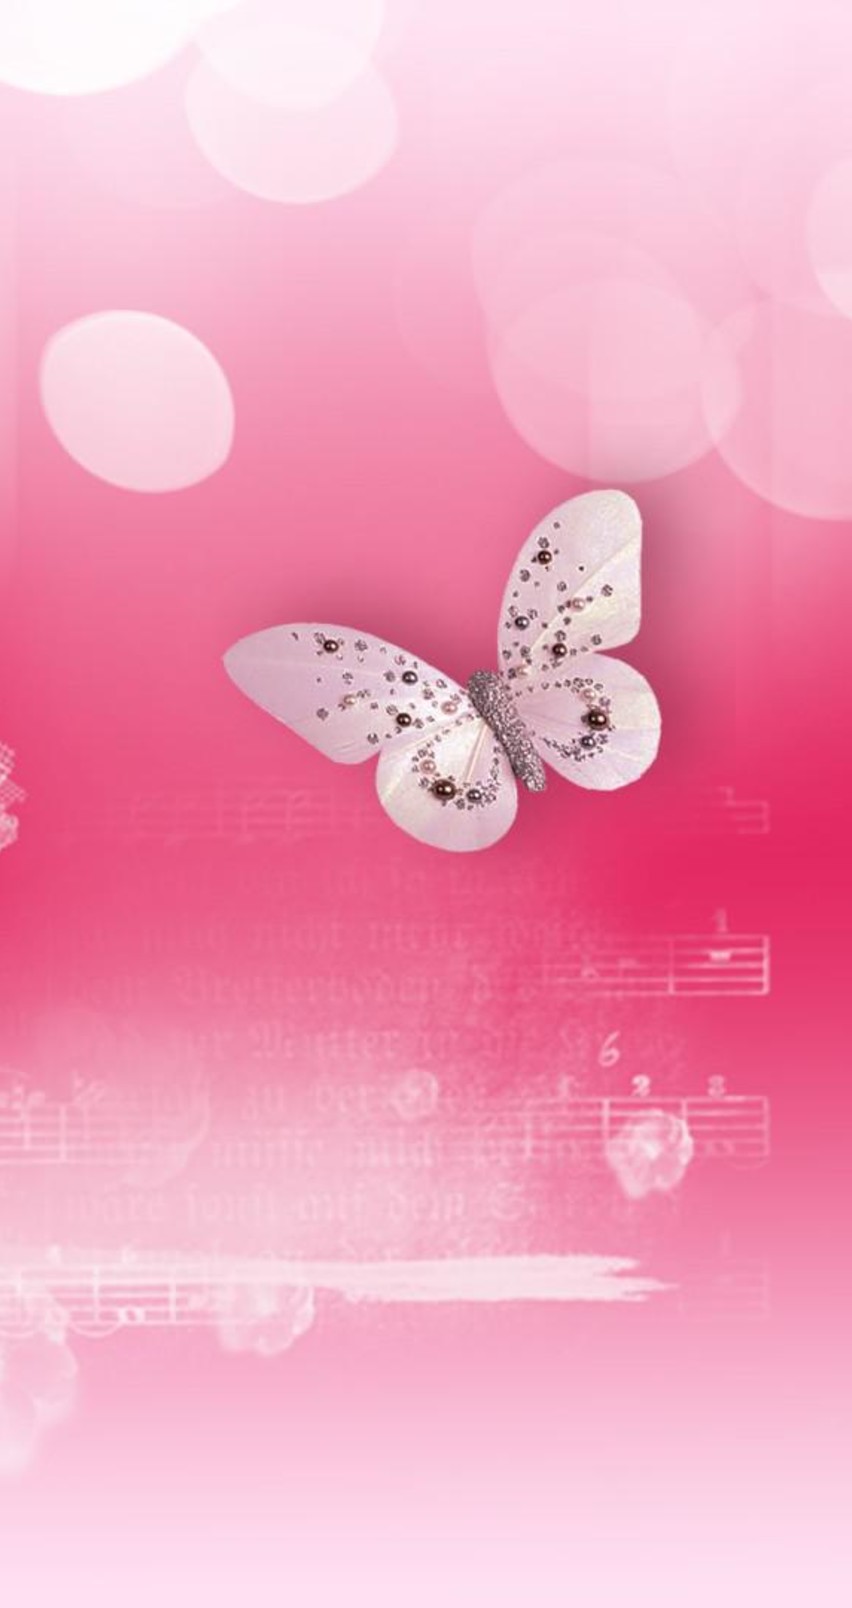 rosa fondo de pantalla para iphone,rosado,mariposa,polillas y mariposas,insecto,ilustración